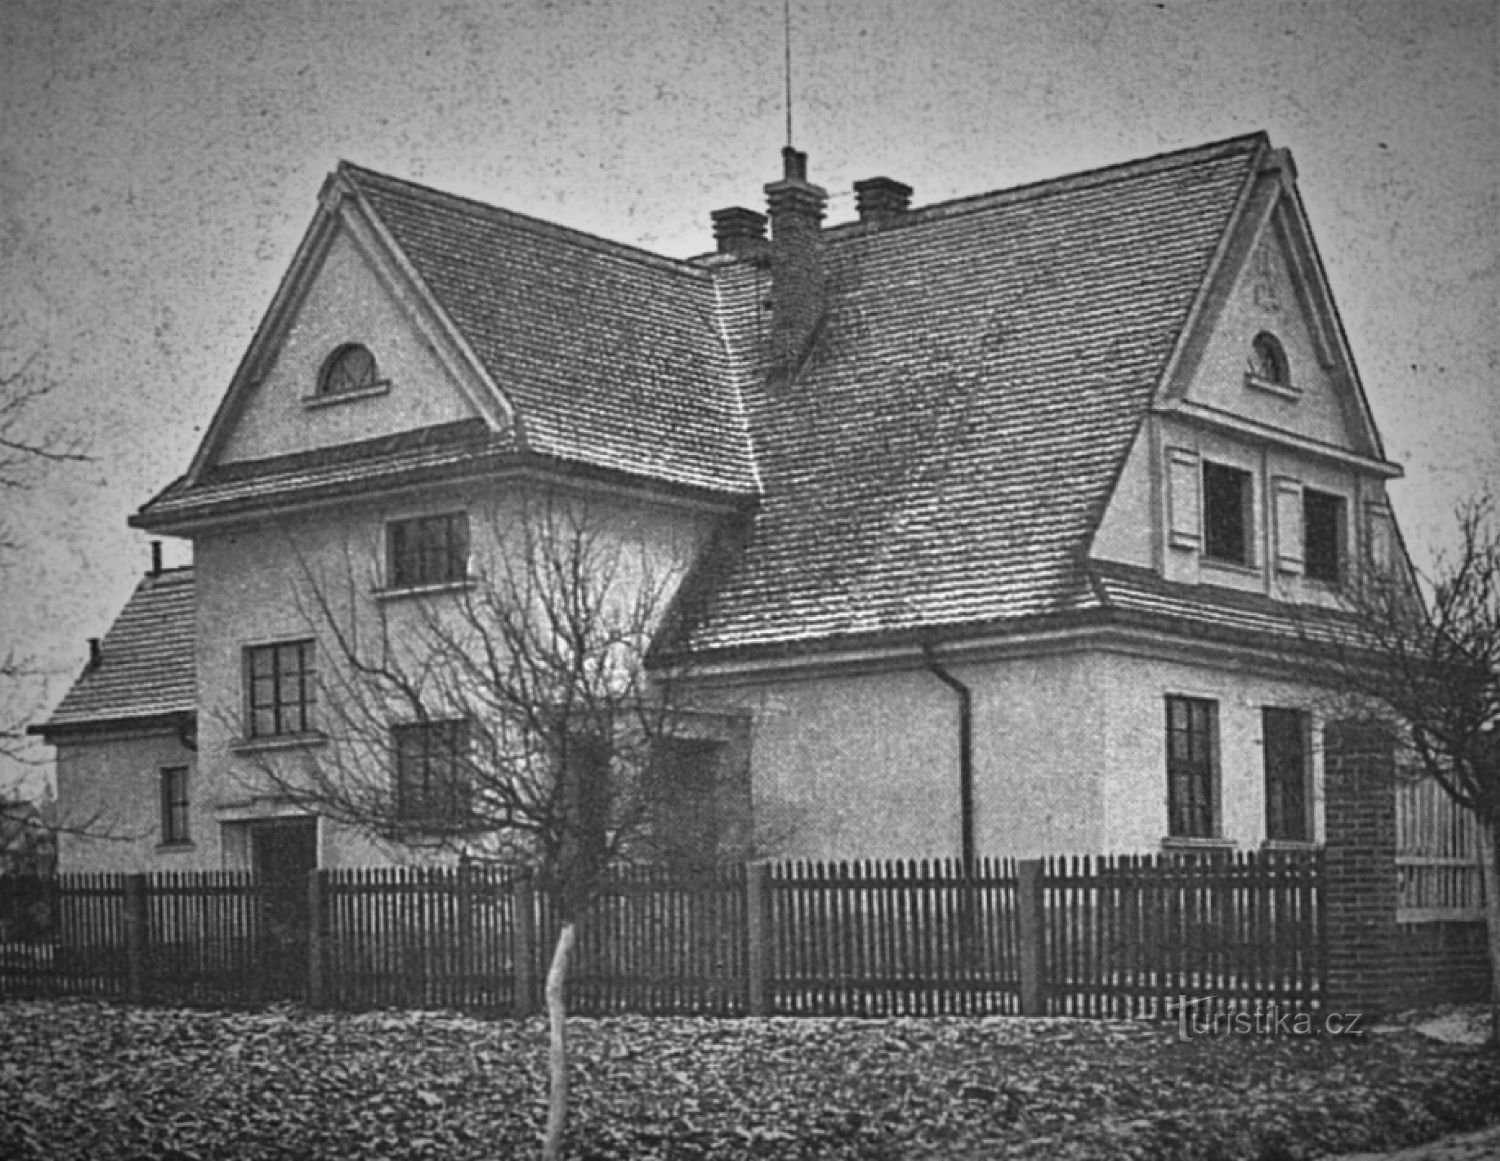 Masaryk-Allgemeinschule der böhmischen Minderheit in Velká Bukovina im Jahr 1925